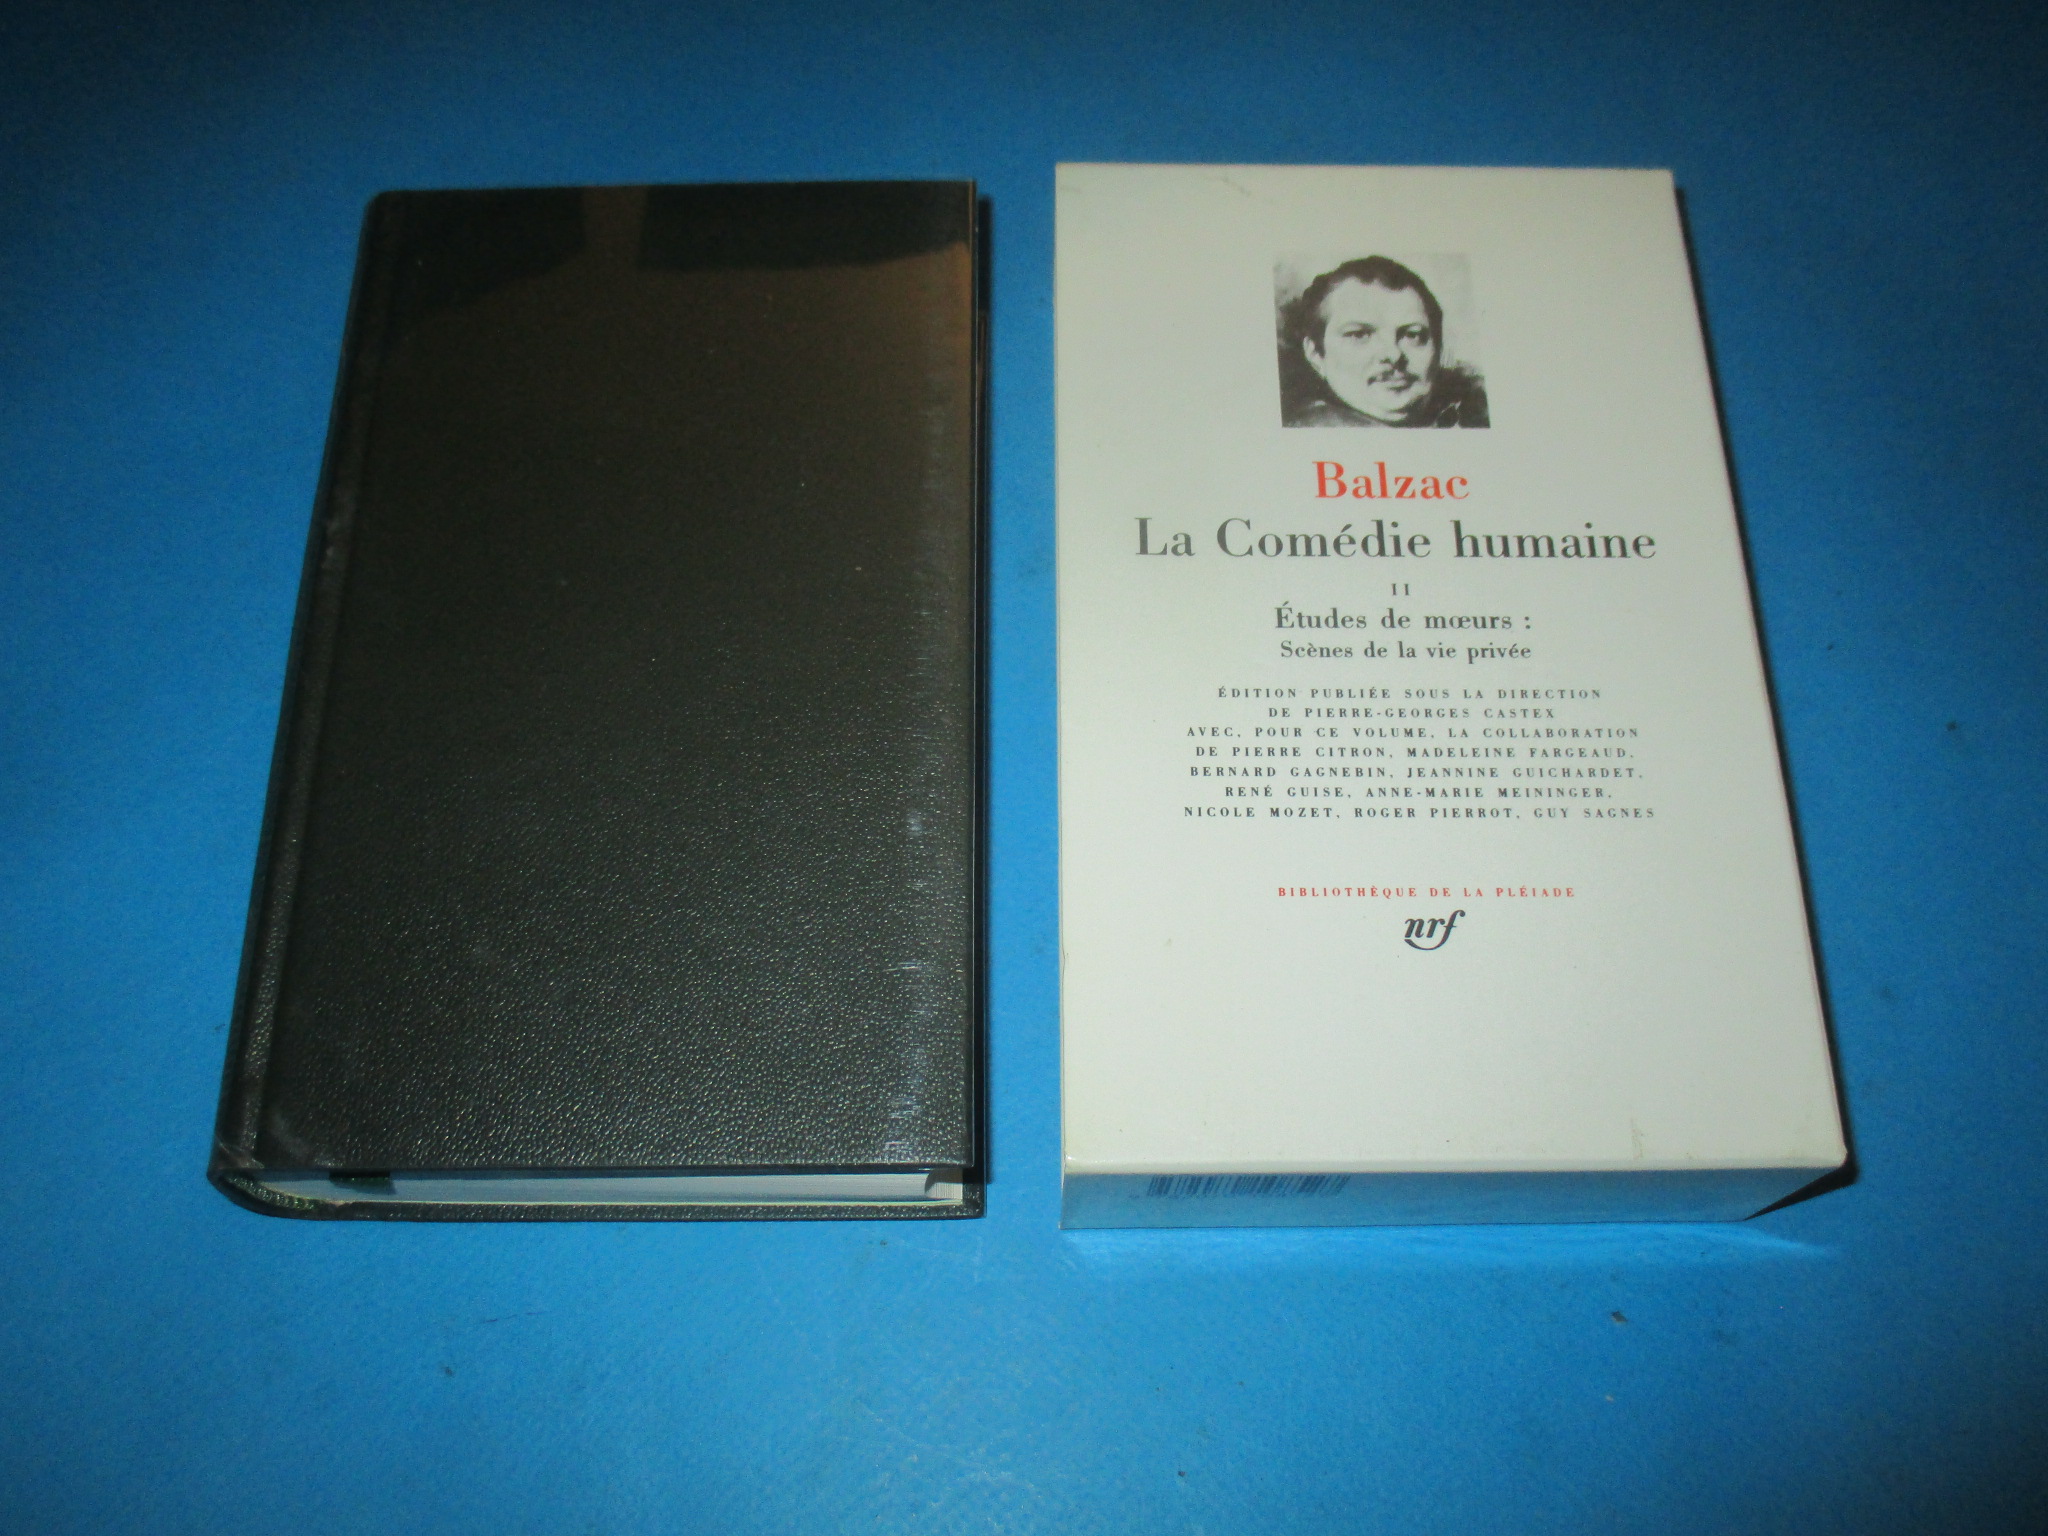 La Comédie Humaine II, tome 2, Balzac, Etudes de moeurs : Scènes de la vie privée, La Pléiade 1989